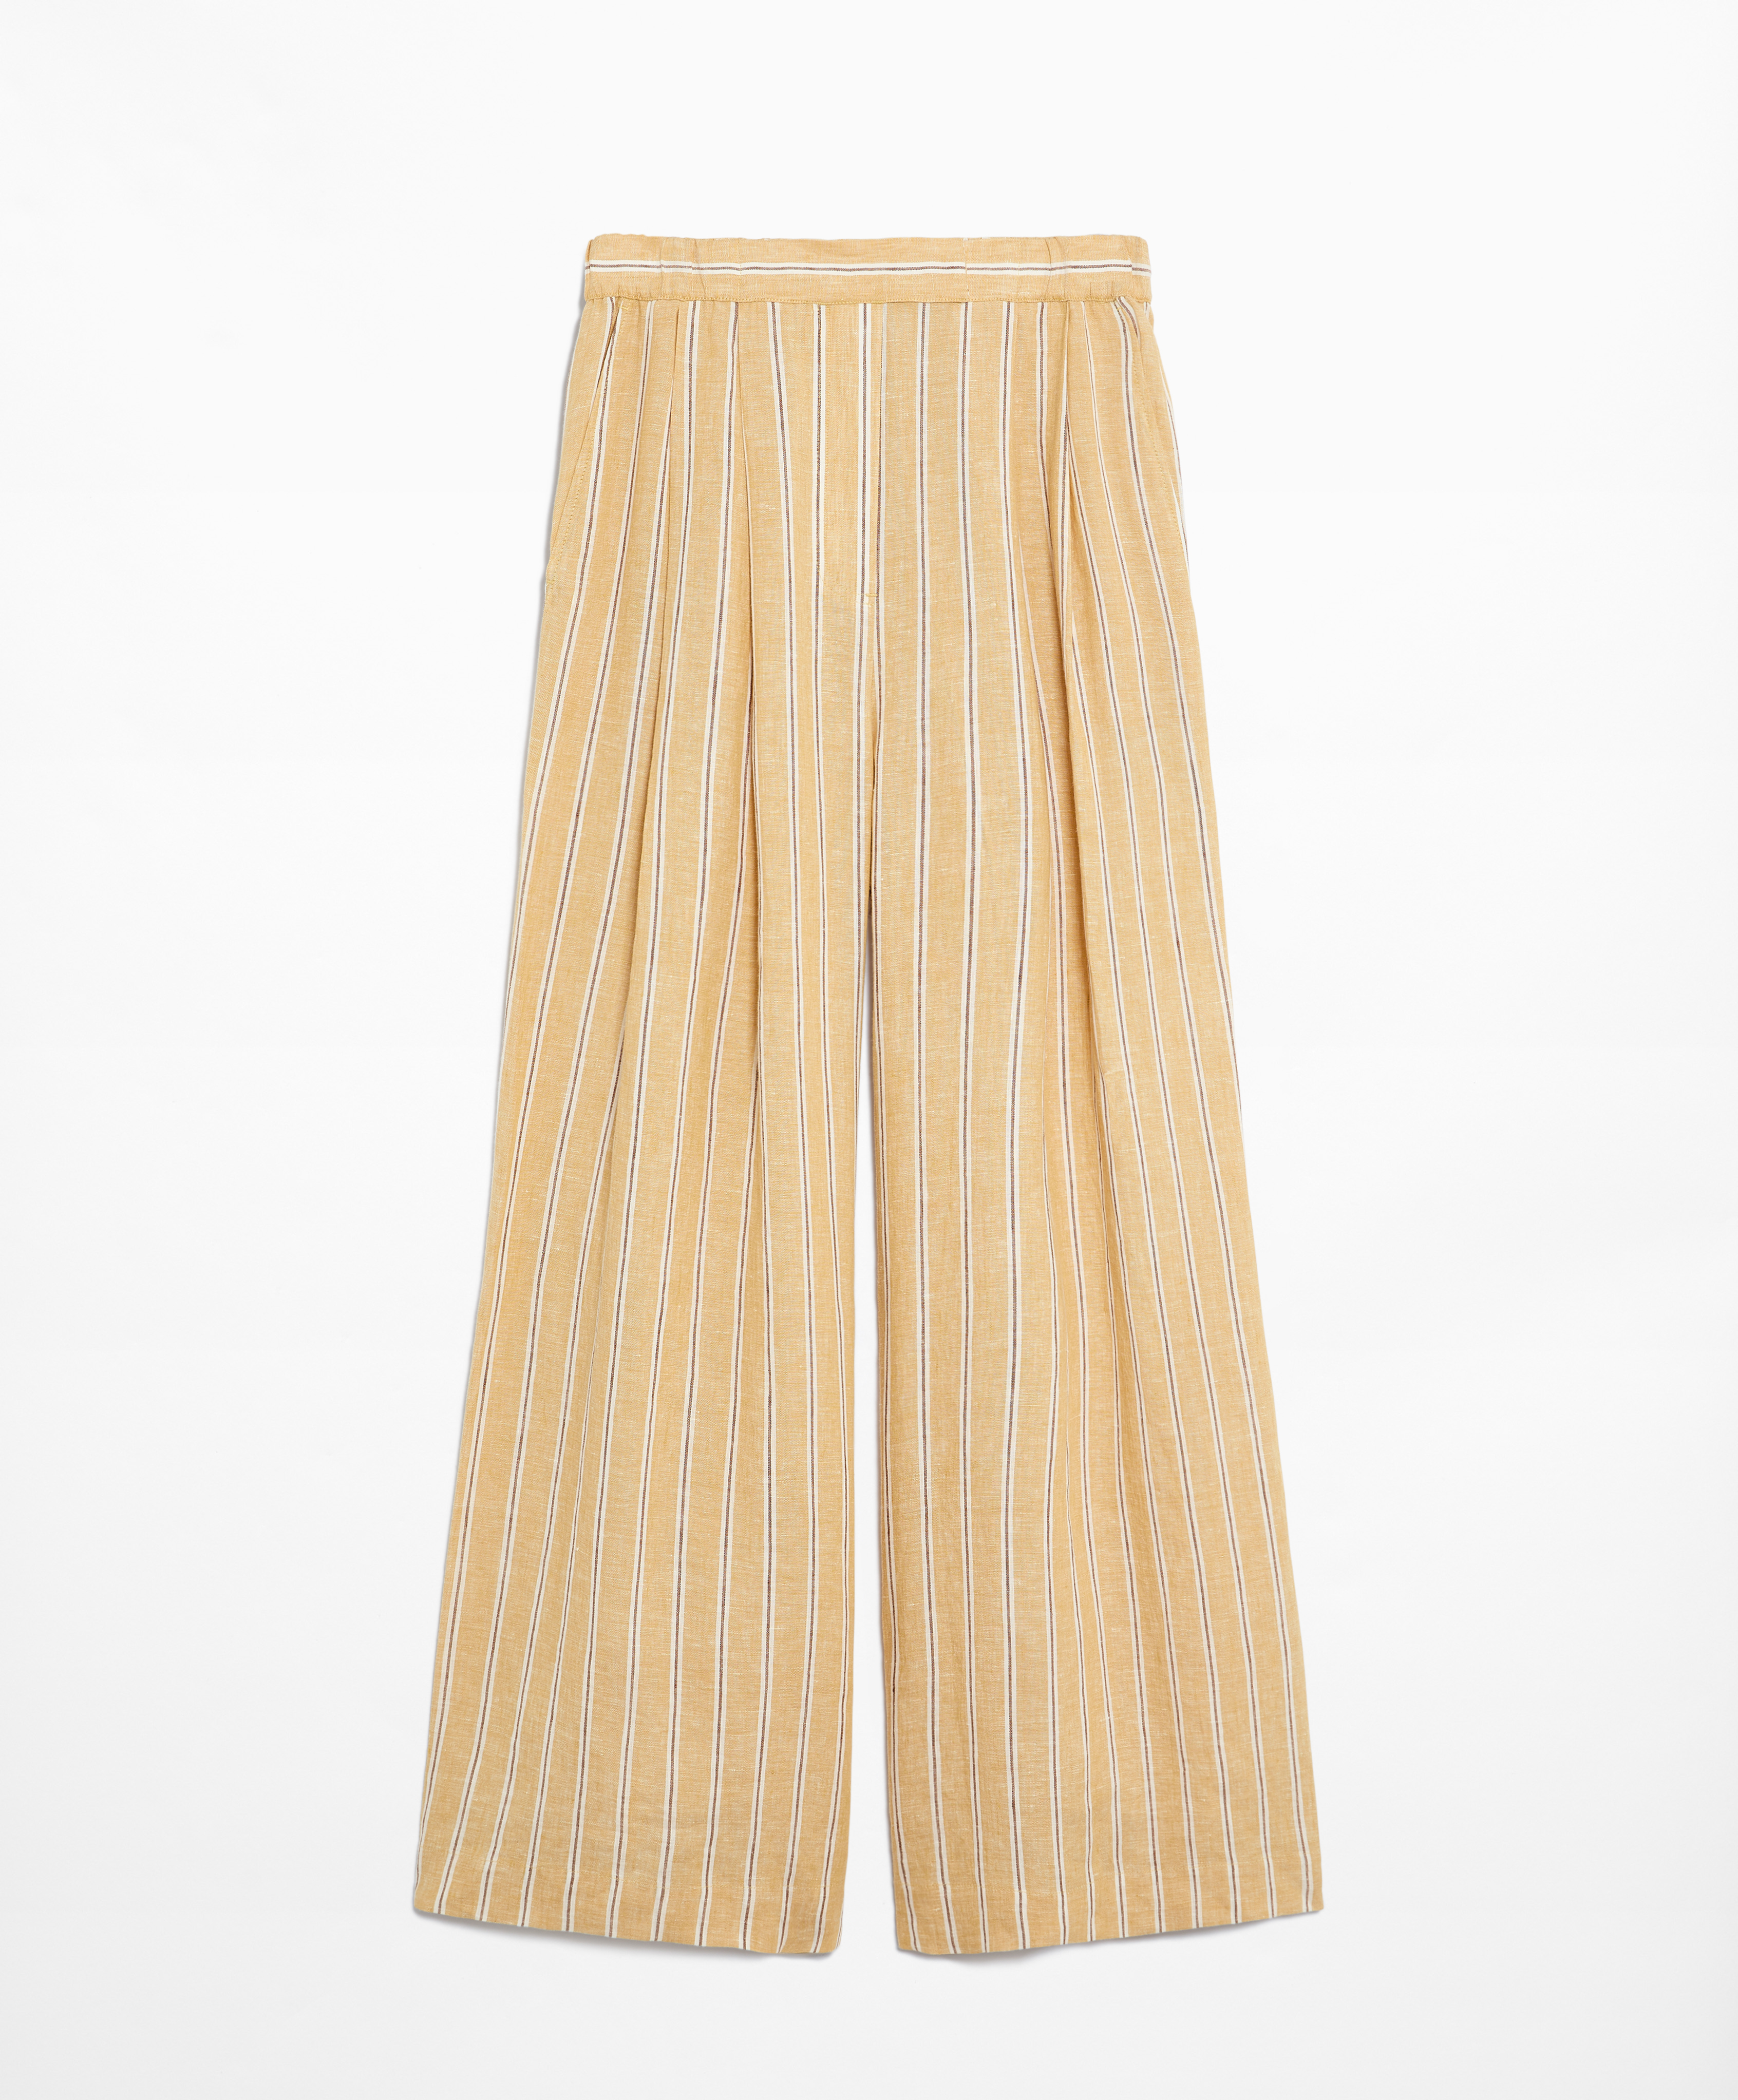 Pantalón tailored fit 100% lino rayas